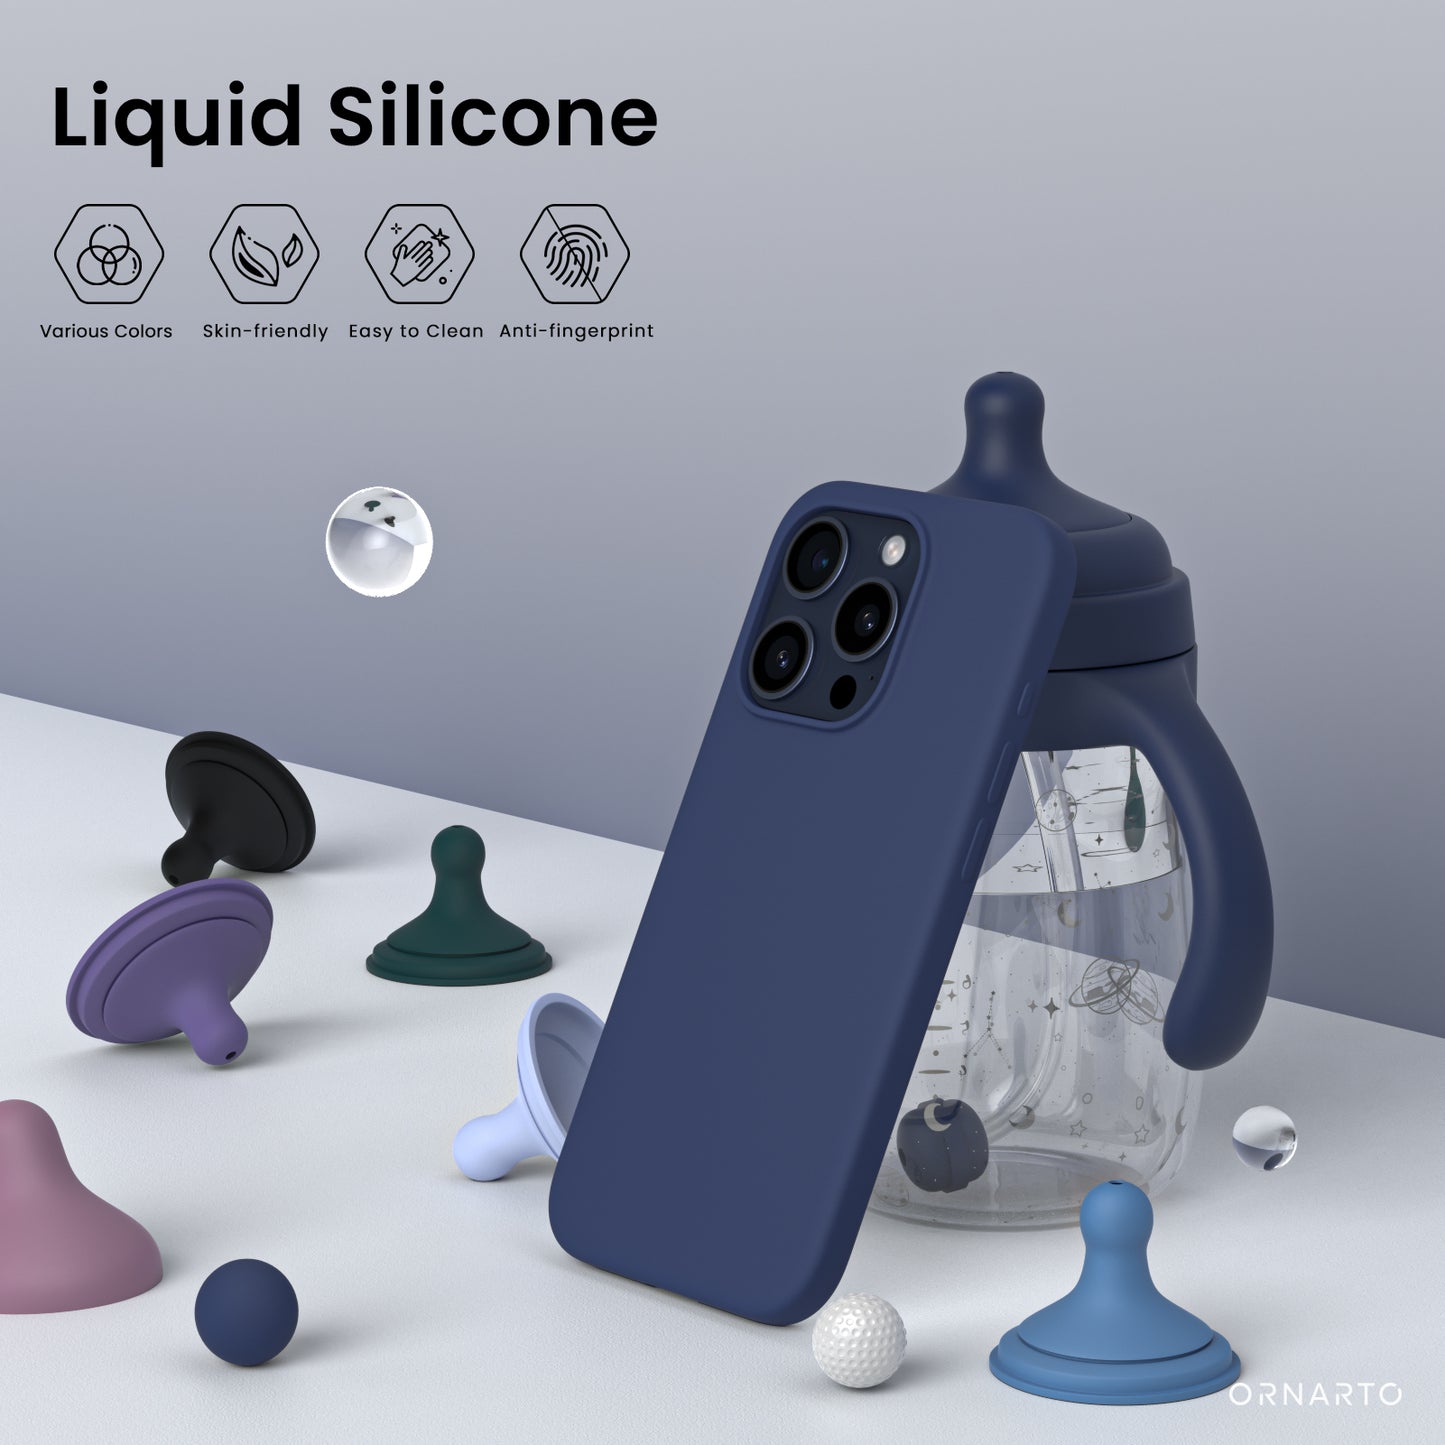 ORNARTO Liquid Silicone iPhone 15 Pro Max Case